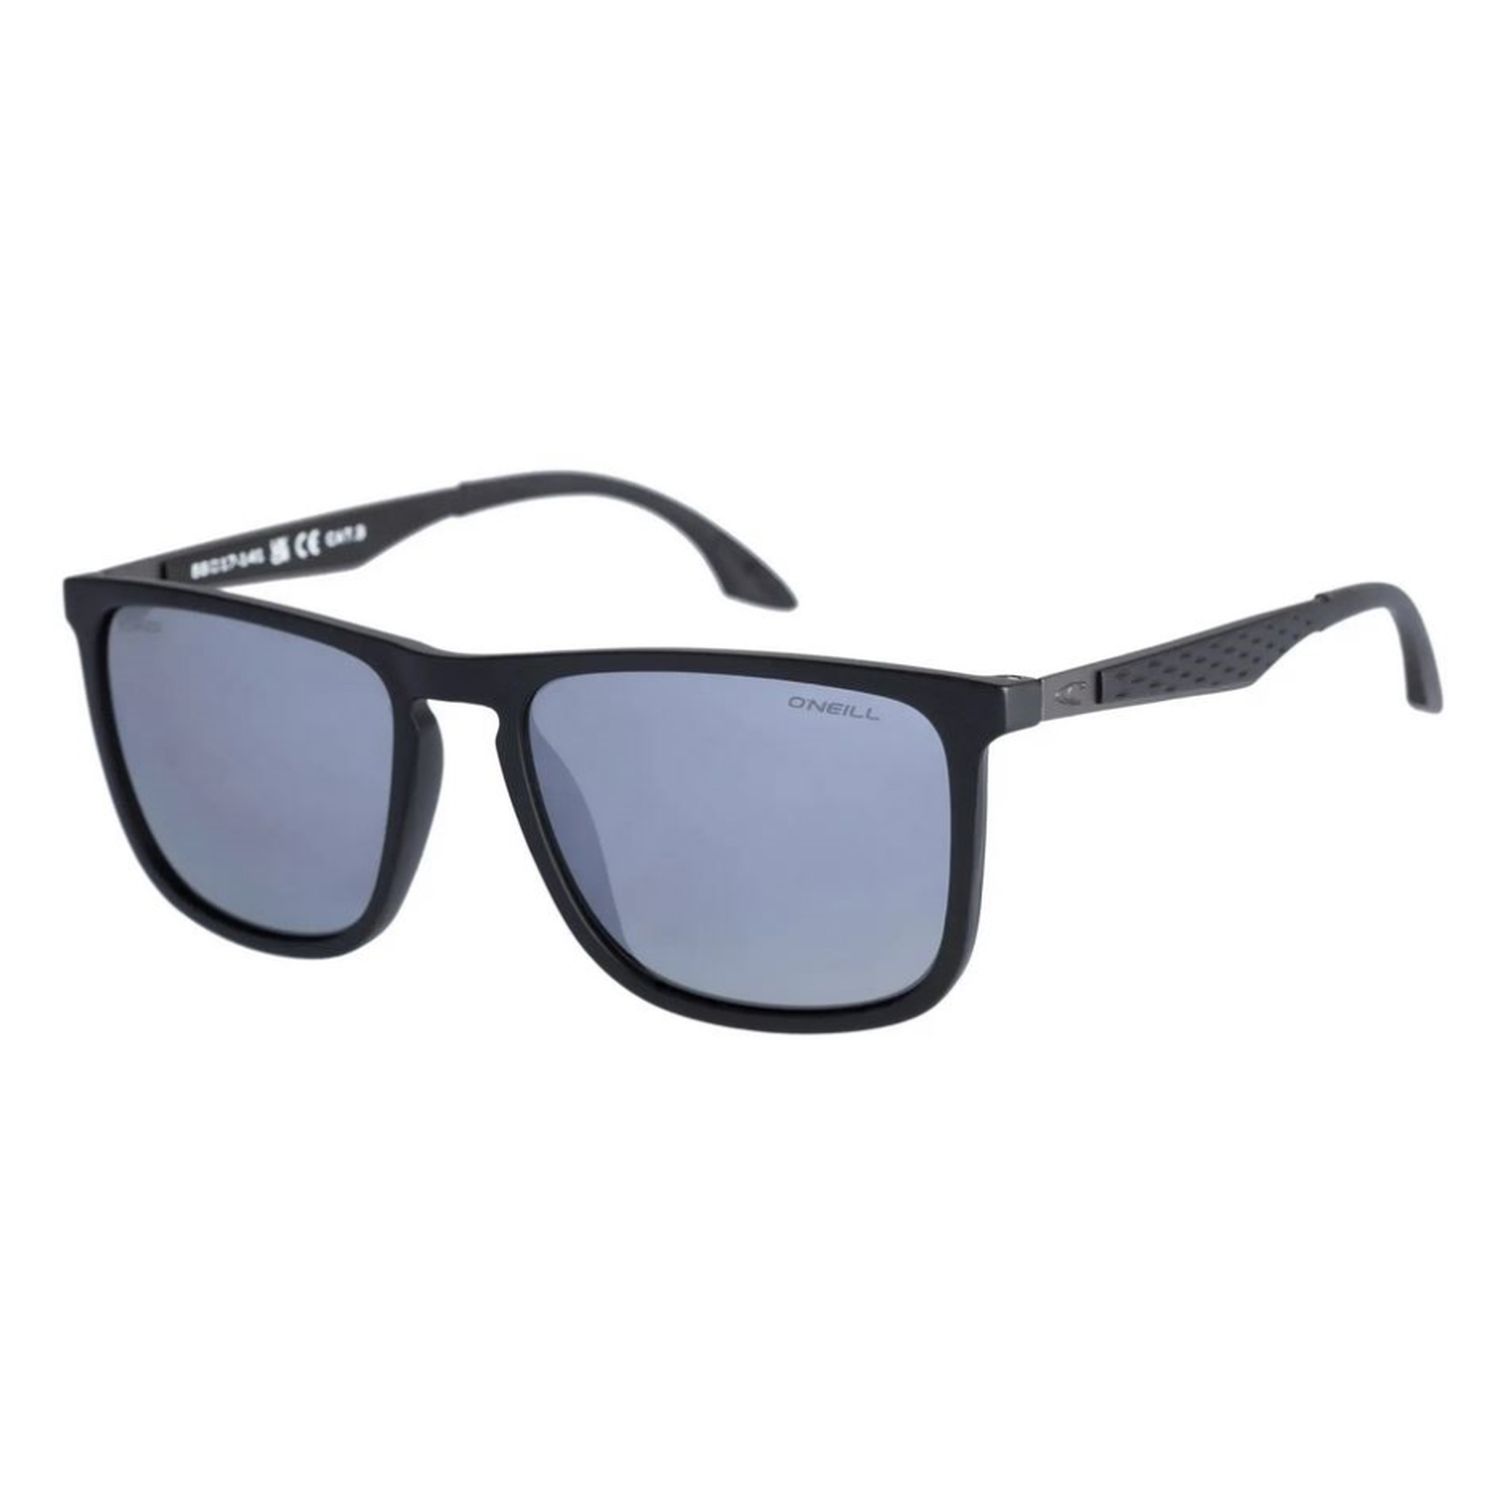 Gafas de sol Ensenada 2.0 104 Negro con cristal azul - Óptica Doñana Visión